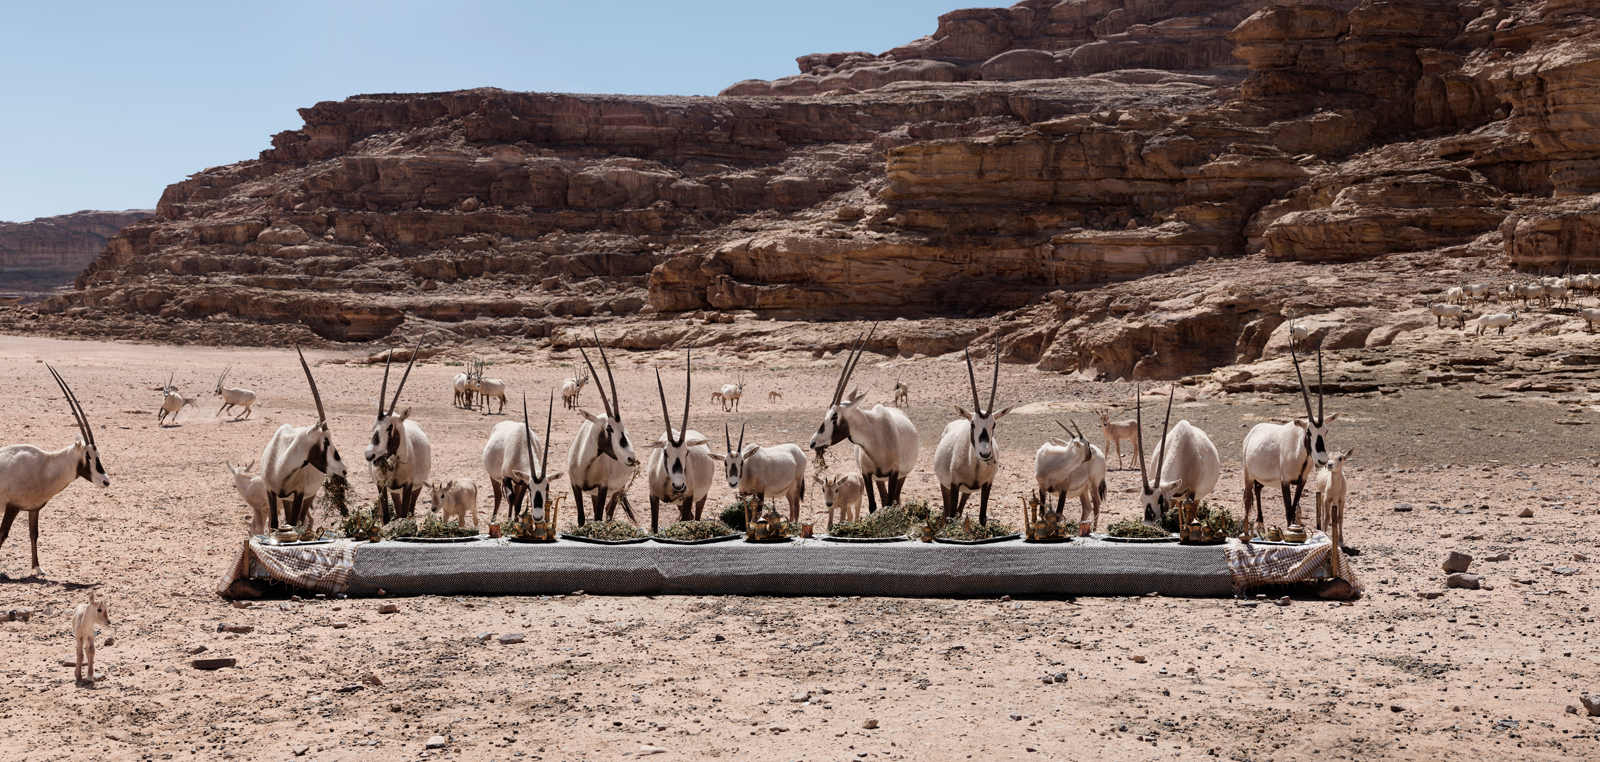  The Oryx Feast  Jordan, 2018  10”x21” | 20”x42” | 40”x84” 